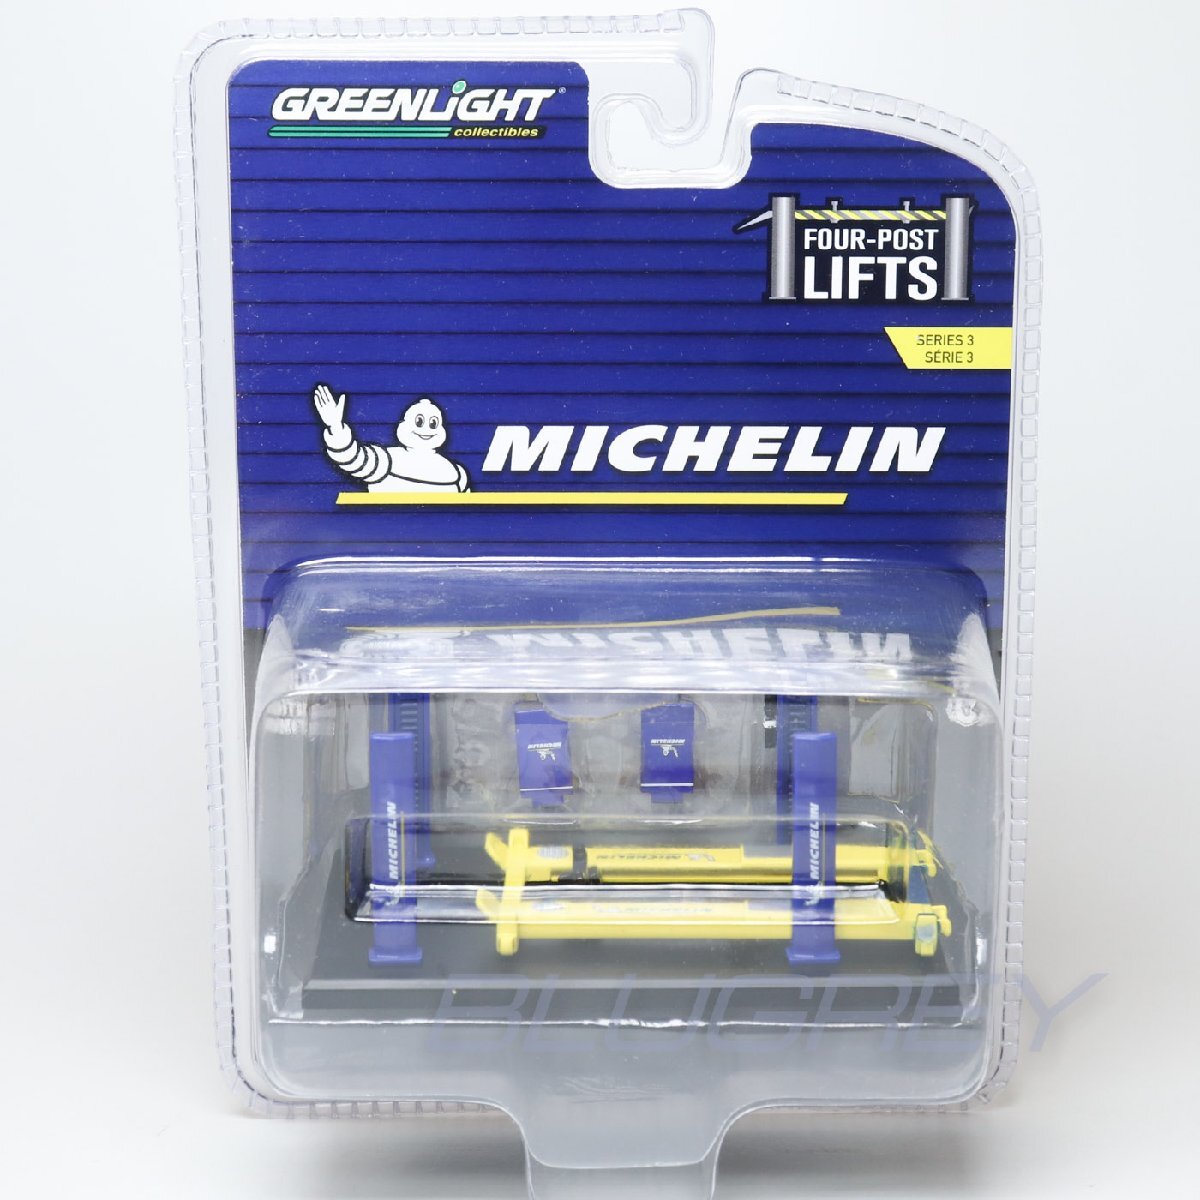 【アウトレット】グリーンライト 1/64 4ポスト リフト シリーズ3 ミシュランタイヤ GREENLIGHT Four-Post Lifts Michelin 16130Bの画像1